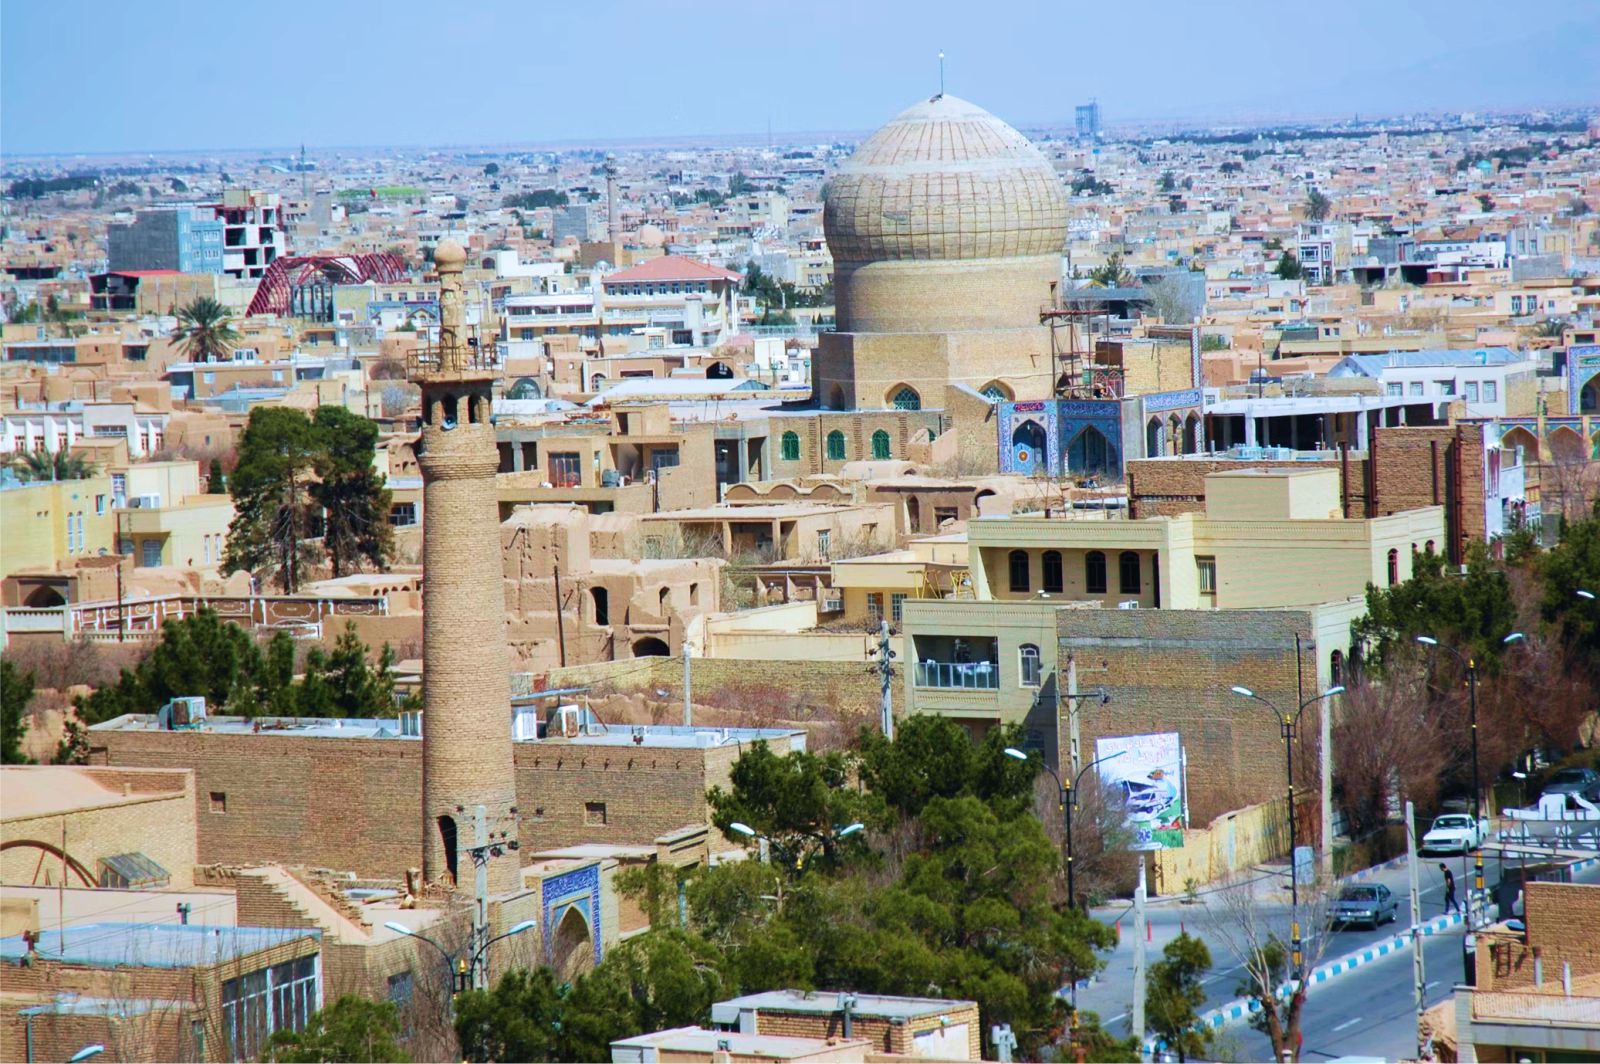  Tháp đón gió - tuyệt tác kiến trúc của thành phố sa mạc Yazd  - Ảnh 16.